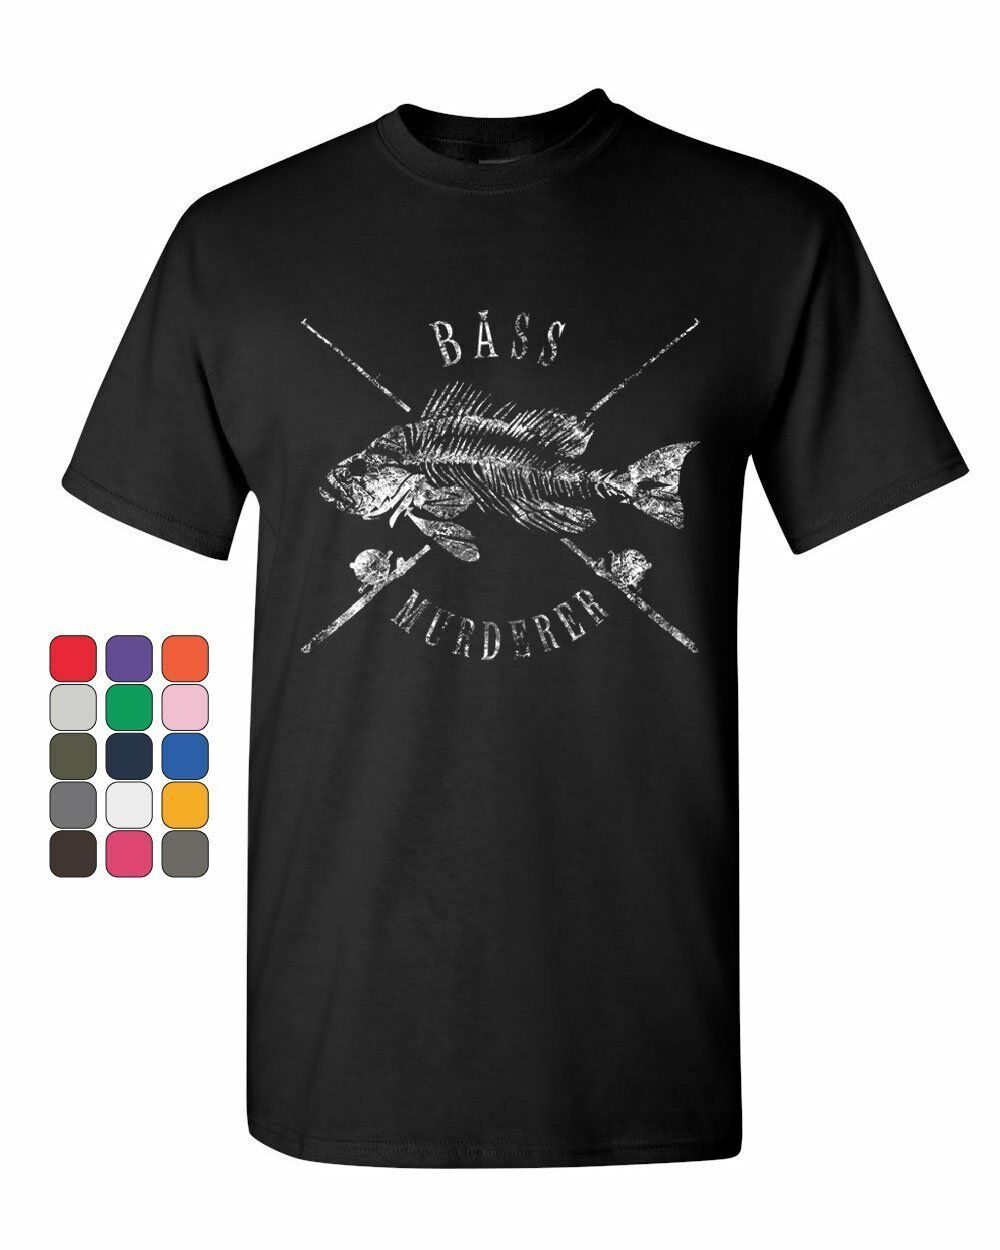 Bass Murderer T-Shirt Funny Mass Murderer Parody Fishing